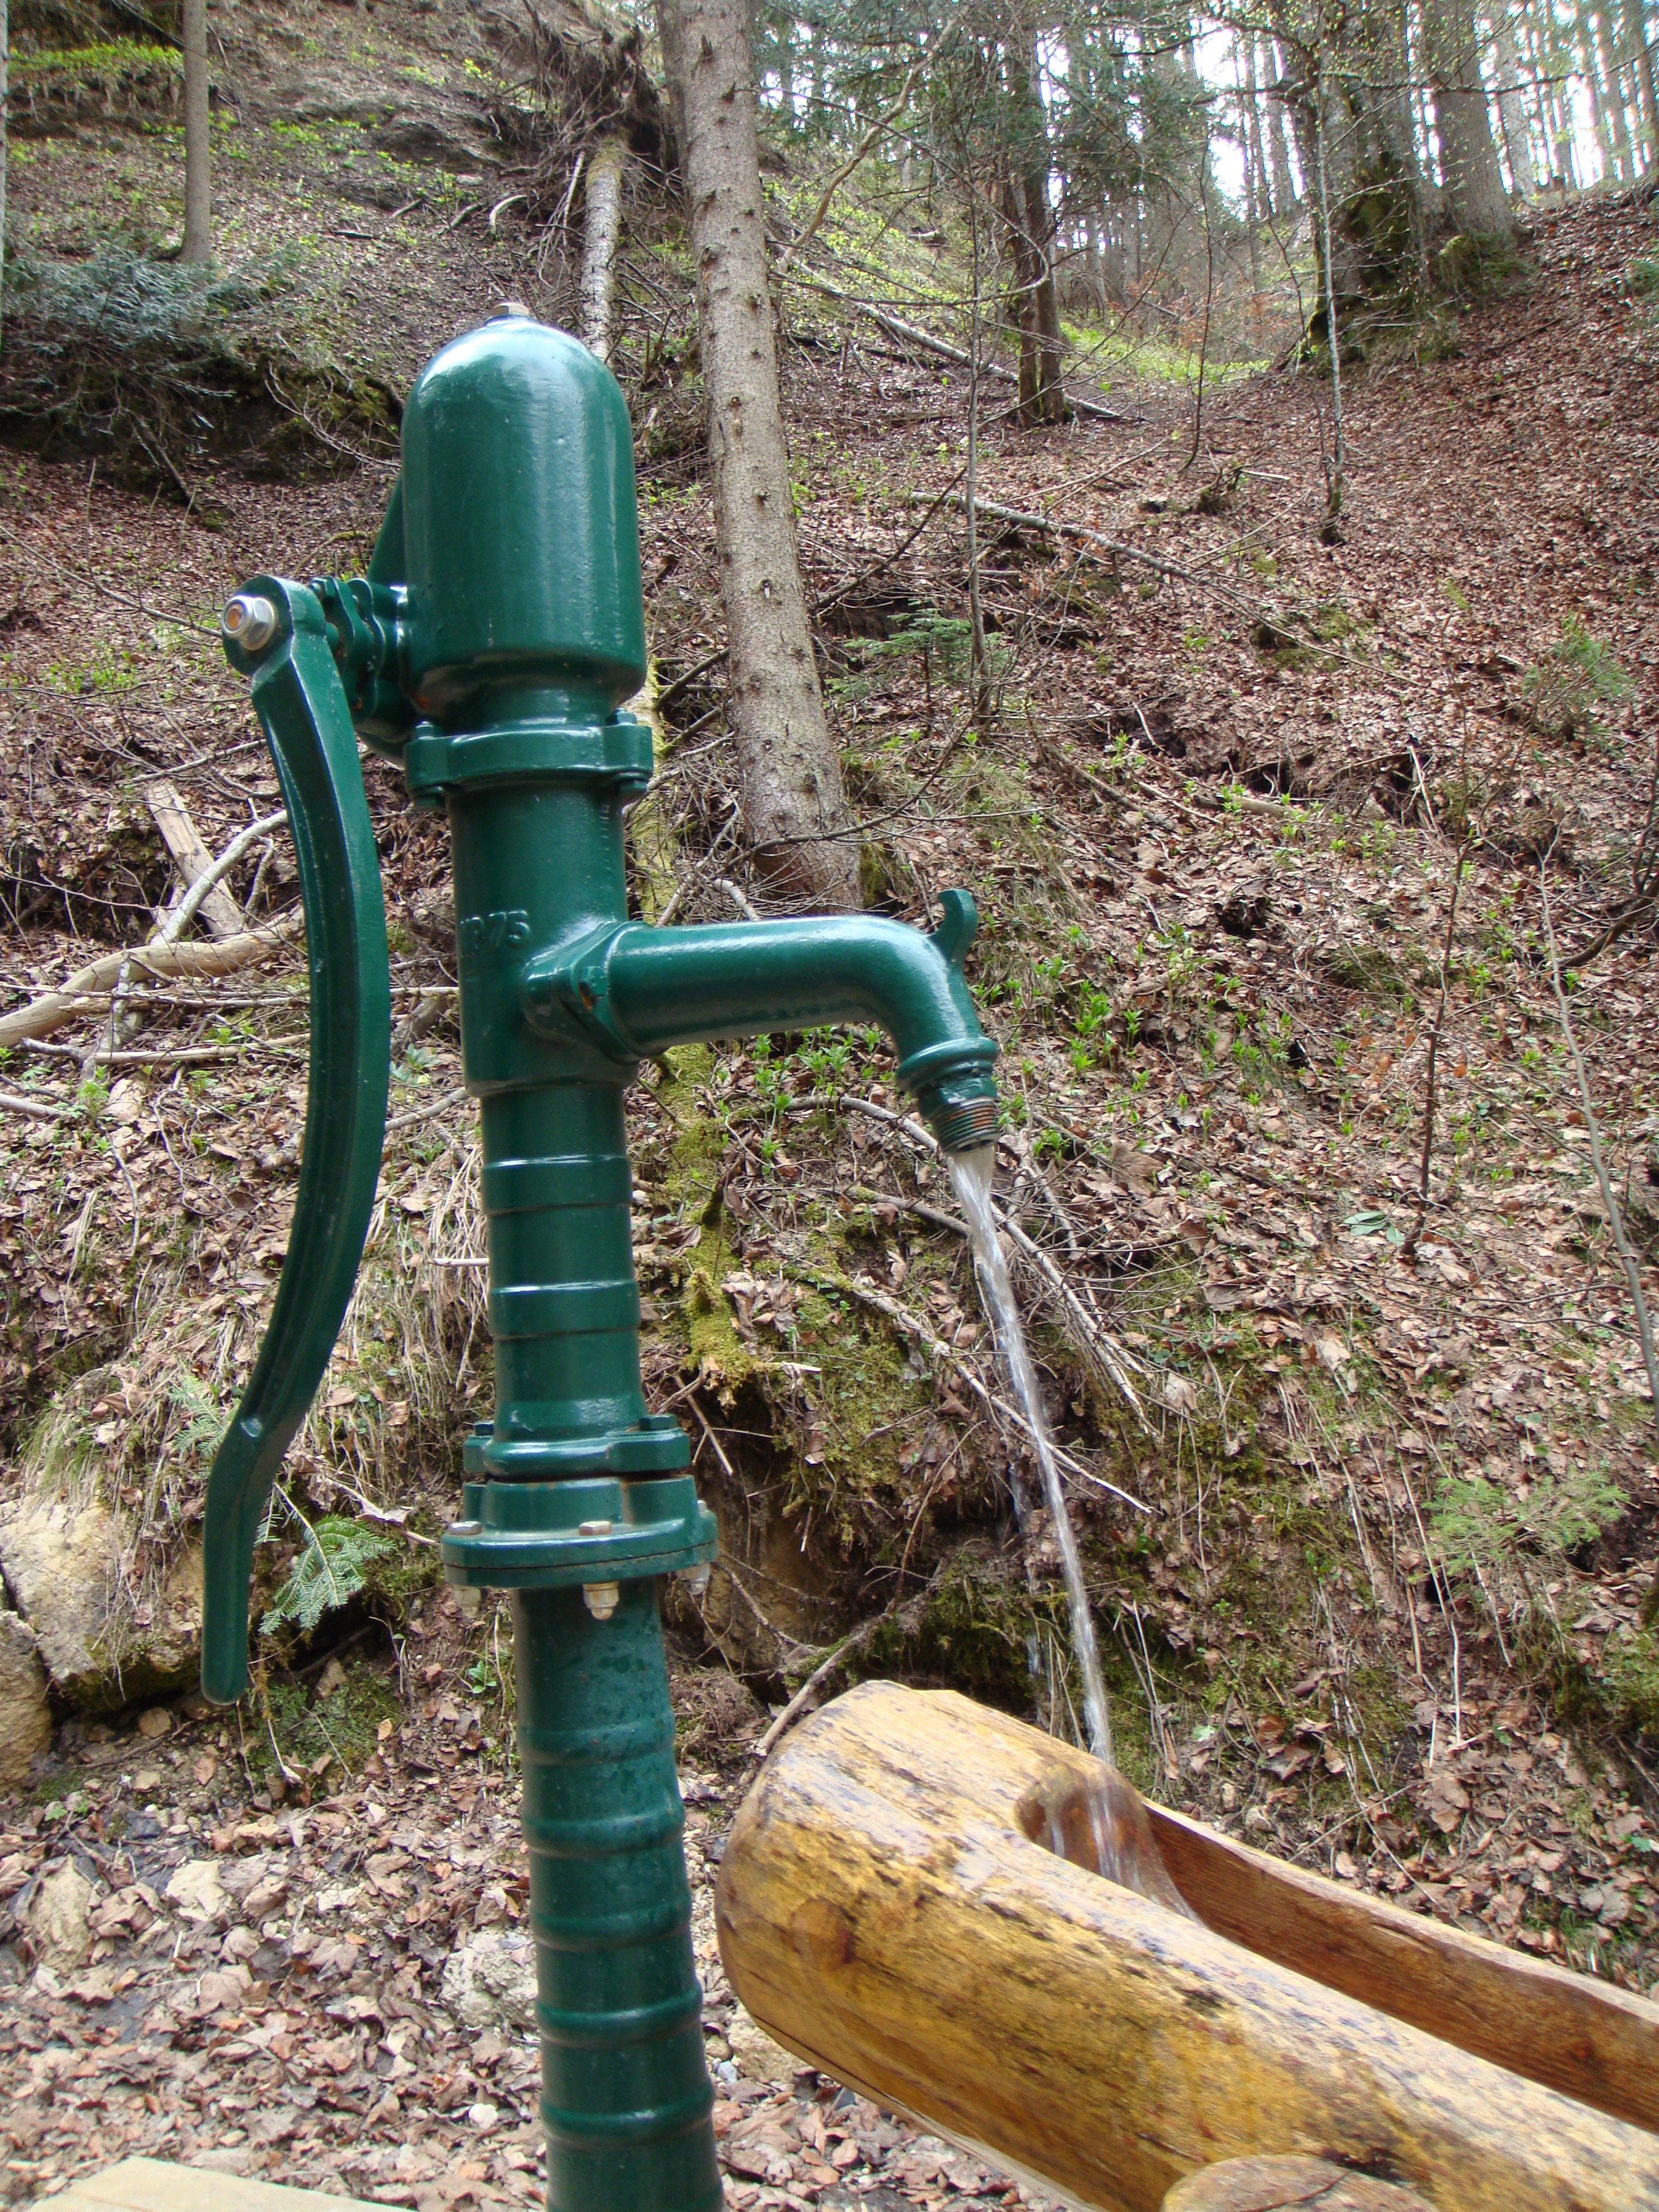 Brunnen mit Handschwengelpumpe